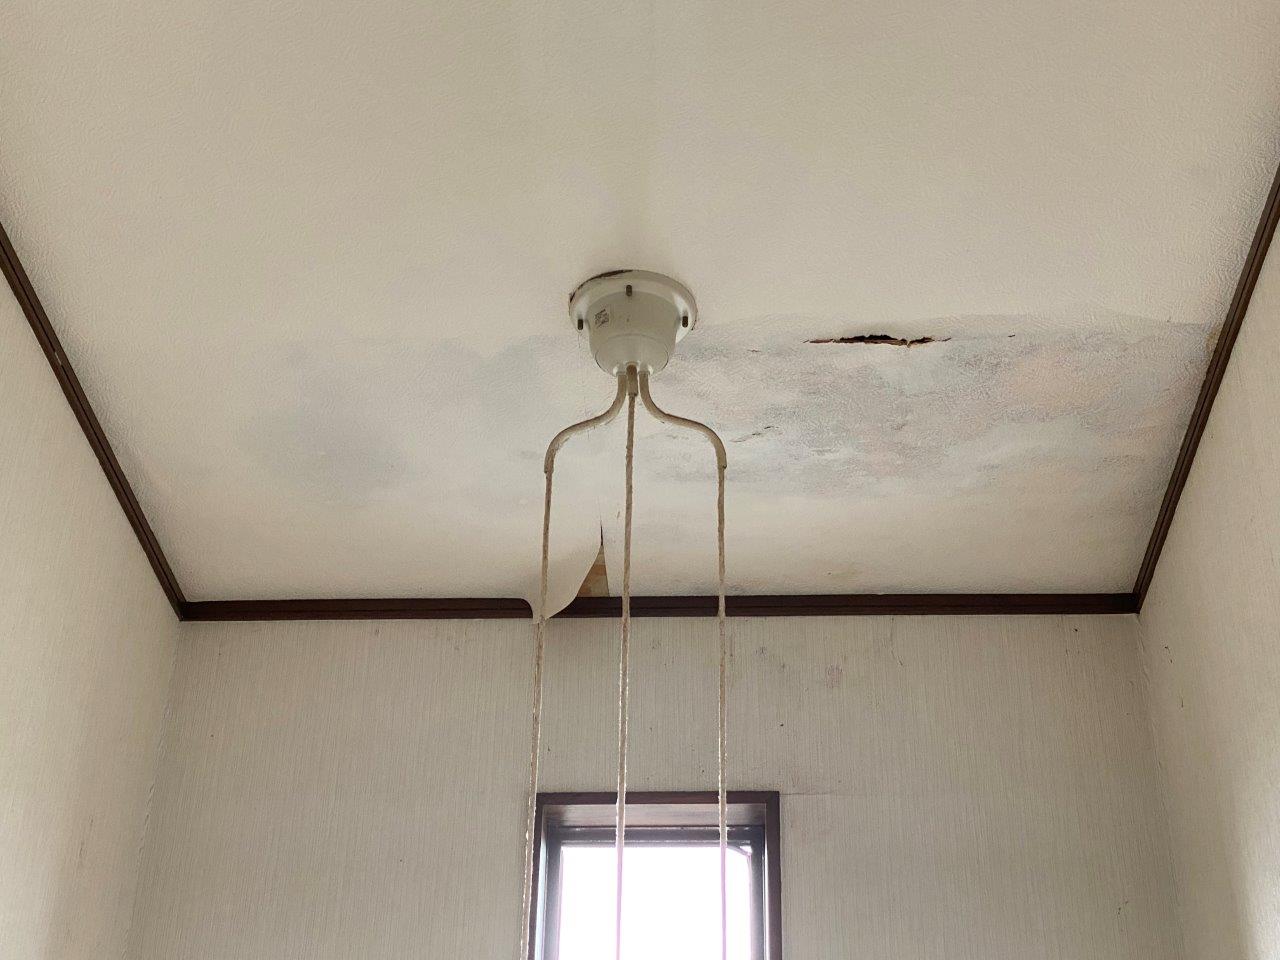 新潟市南区にて豪雨によって天井から雨漏れしているので修理したいとご相談を頂きました